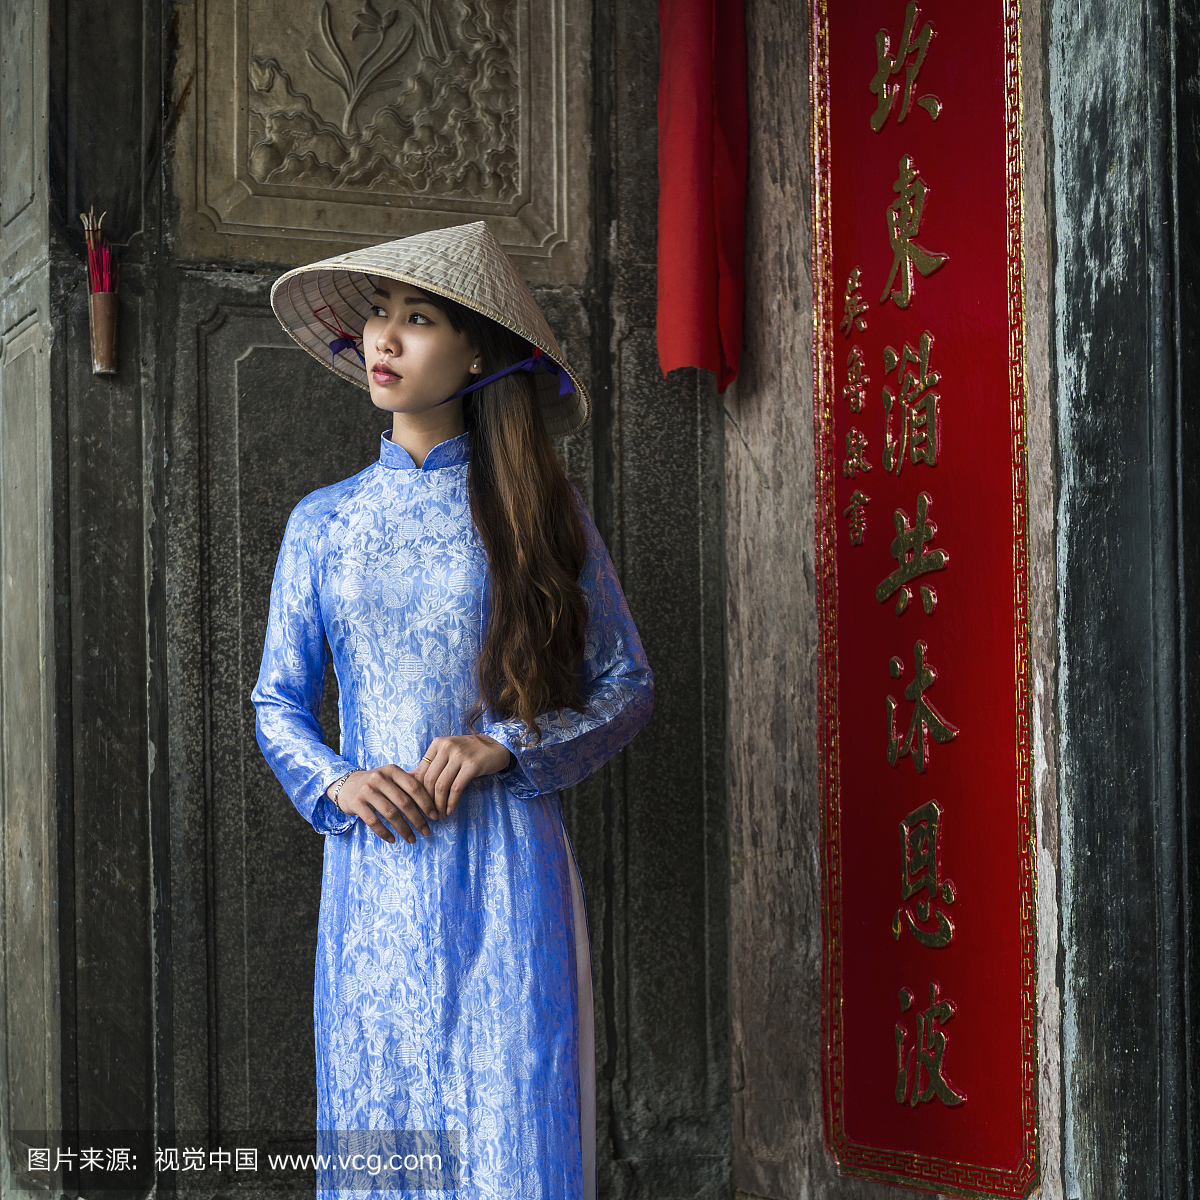 越南妇女站在寺庙入口处